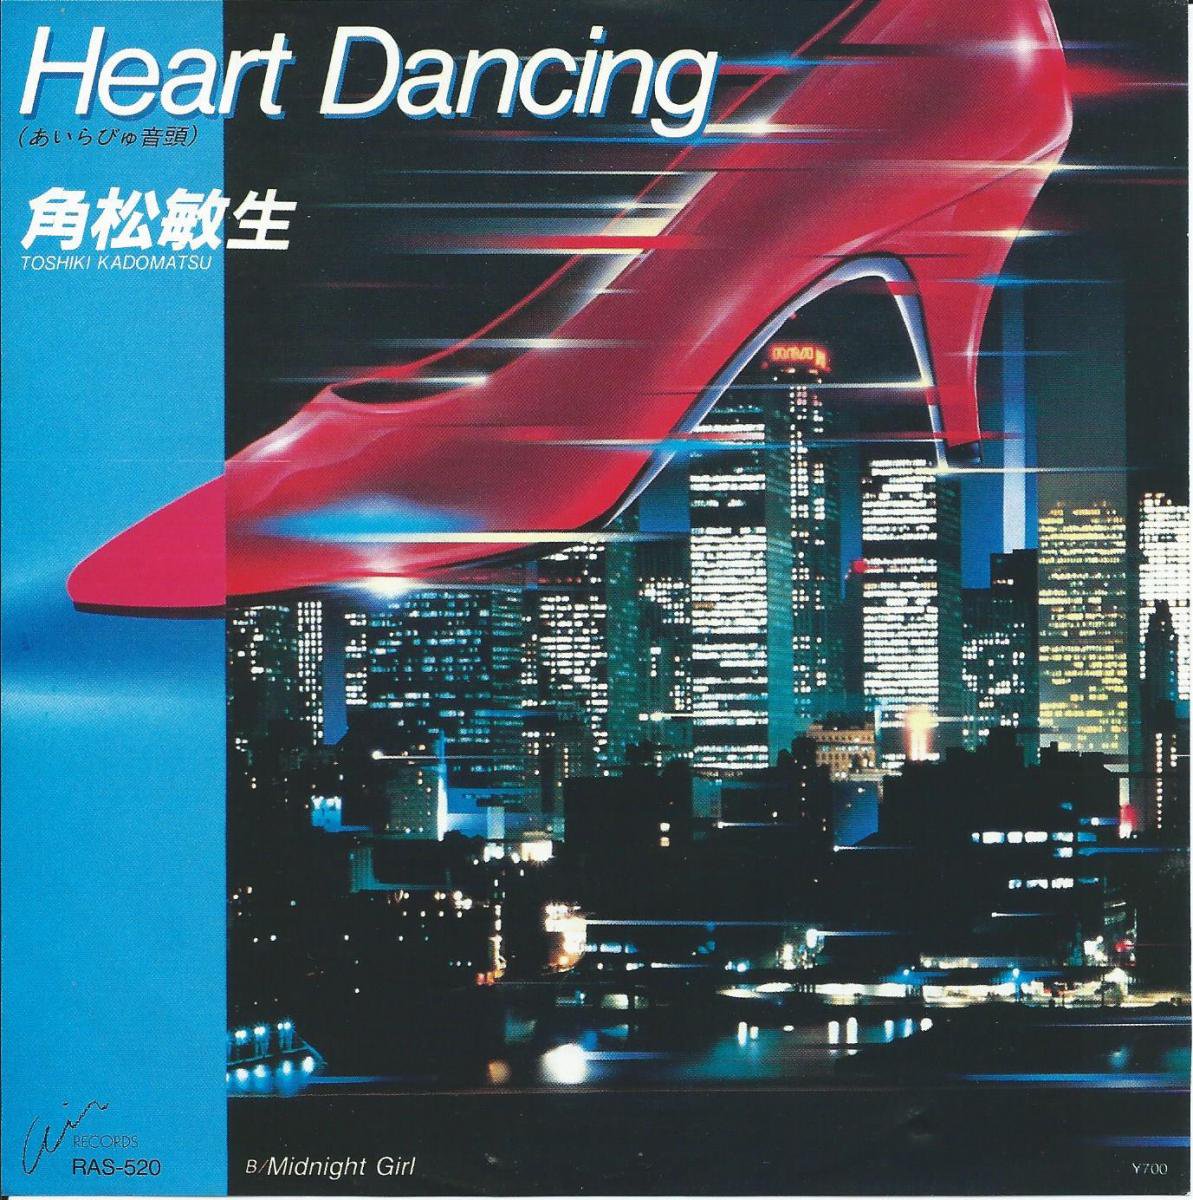 角松敏生 TOSHIKI KADOMATSU / HEART DANCING (あいらびゅ音頭) / MIDNIGHT GIRL (7